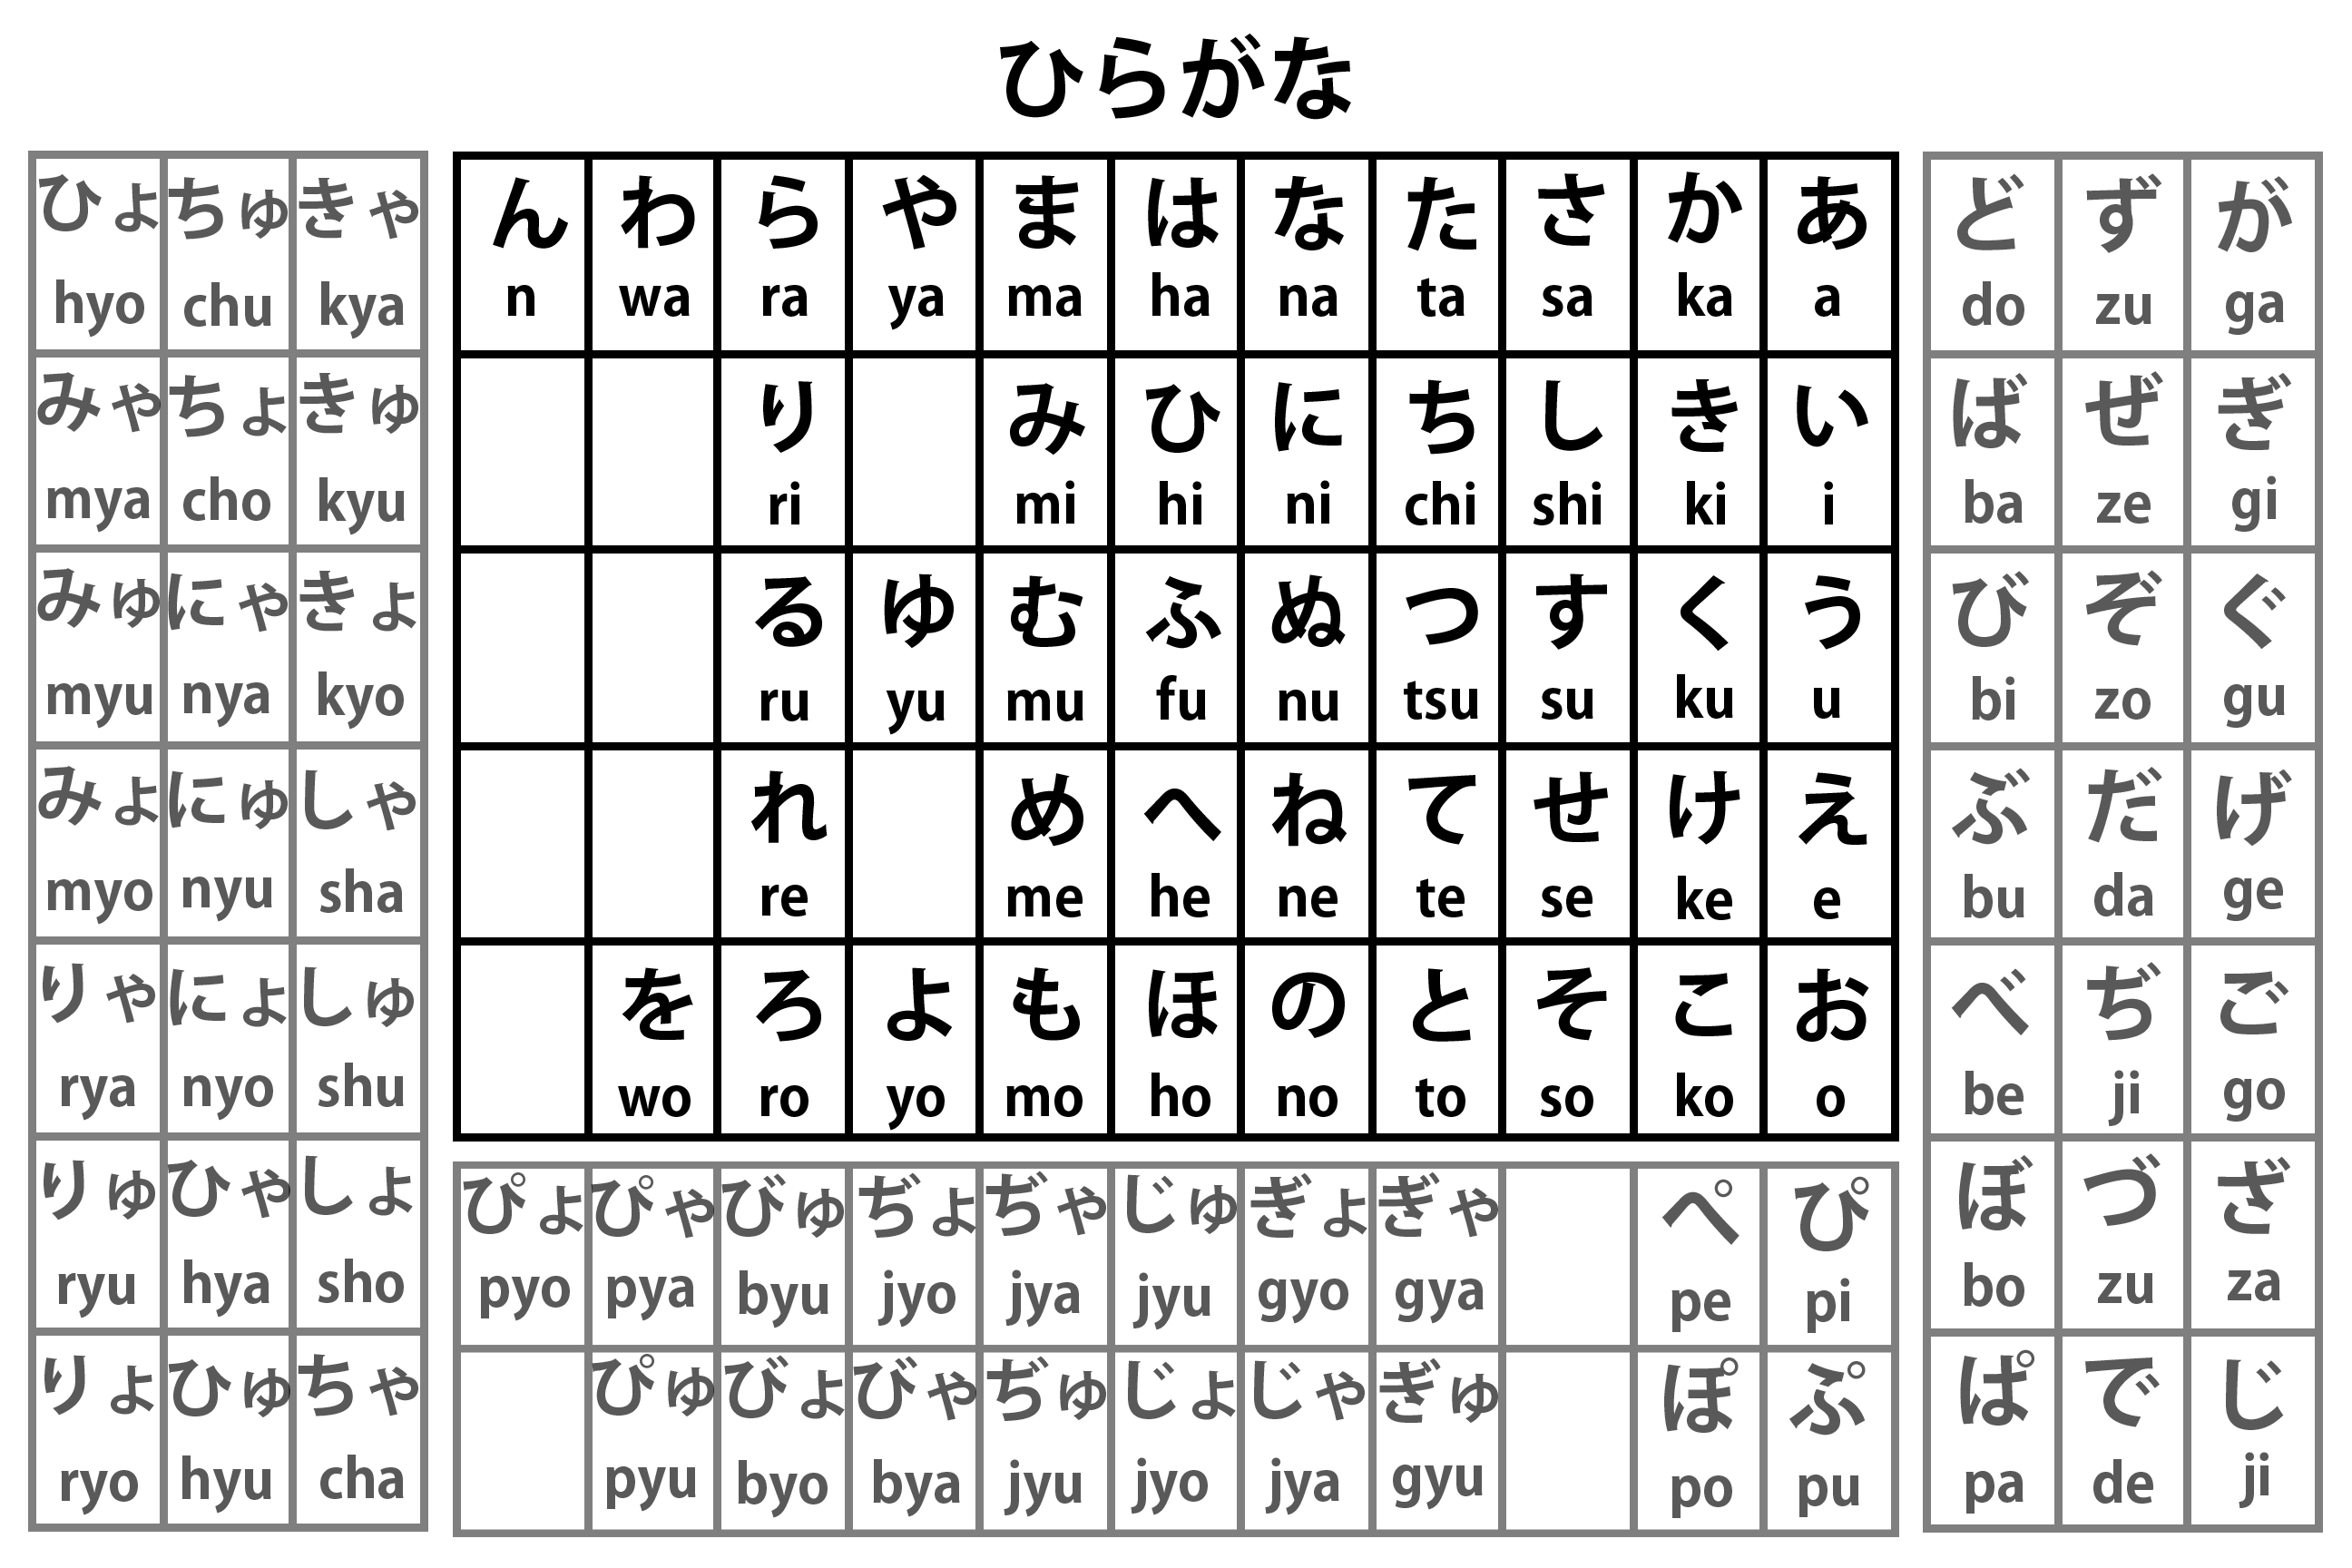 bảng chữ cái Hiragana